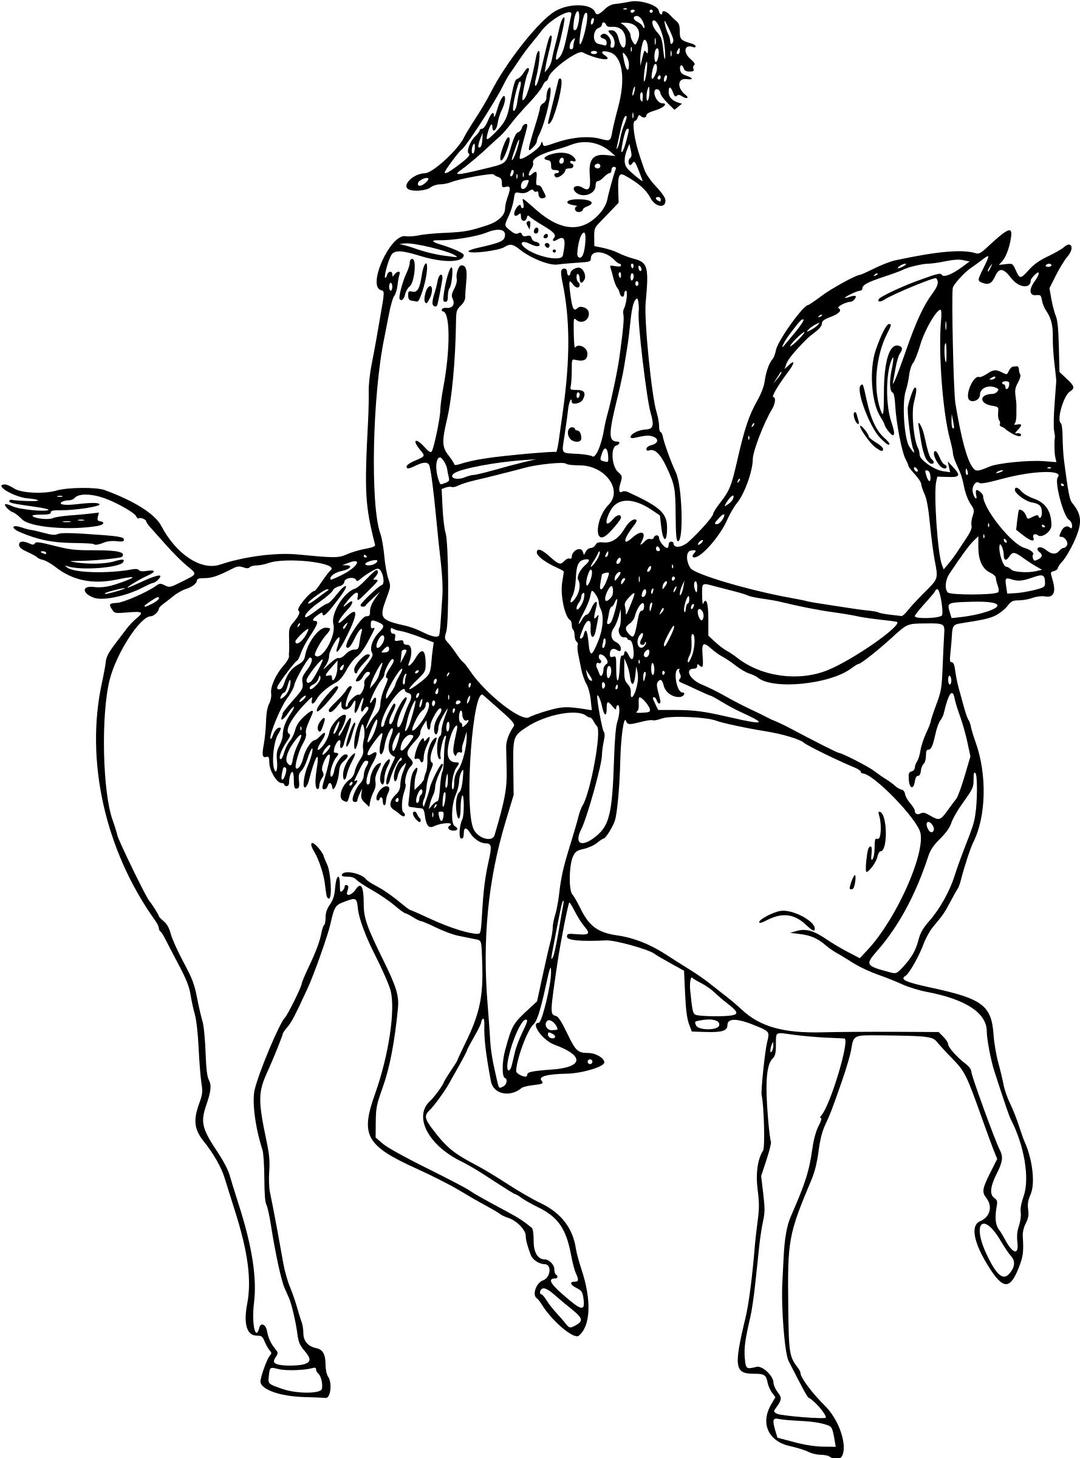 Nobleman on horseback png transparent